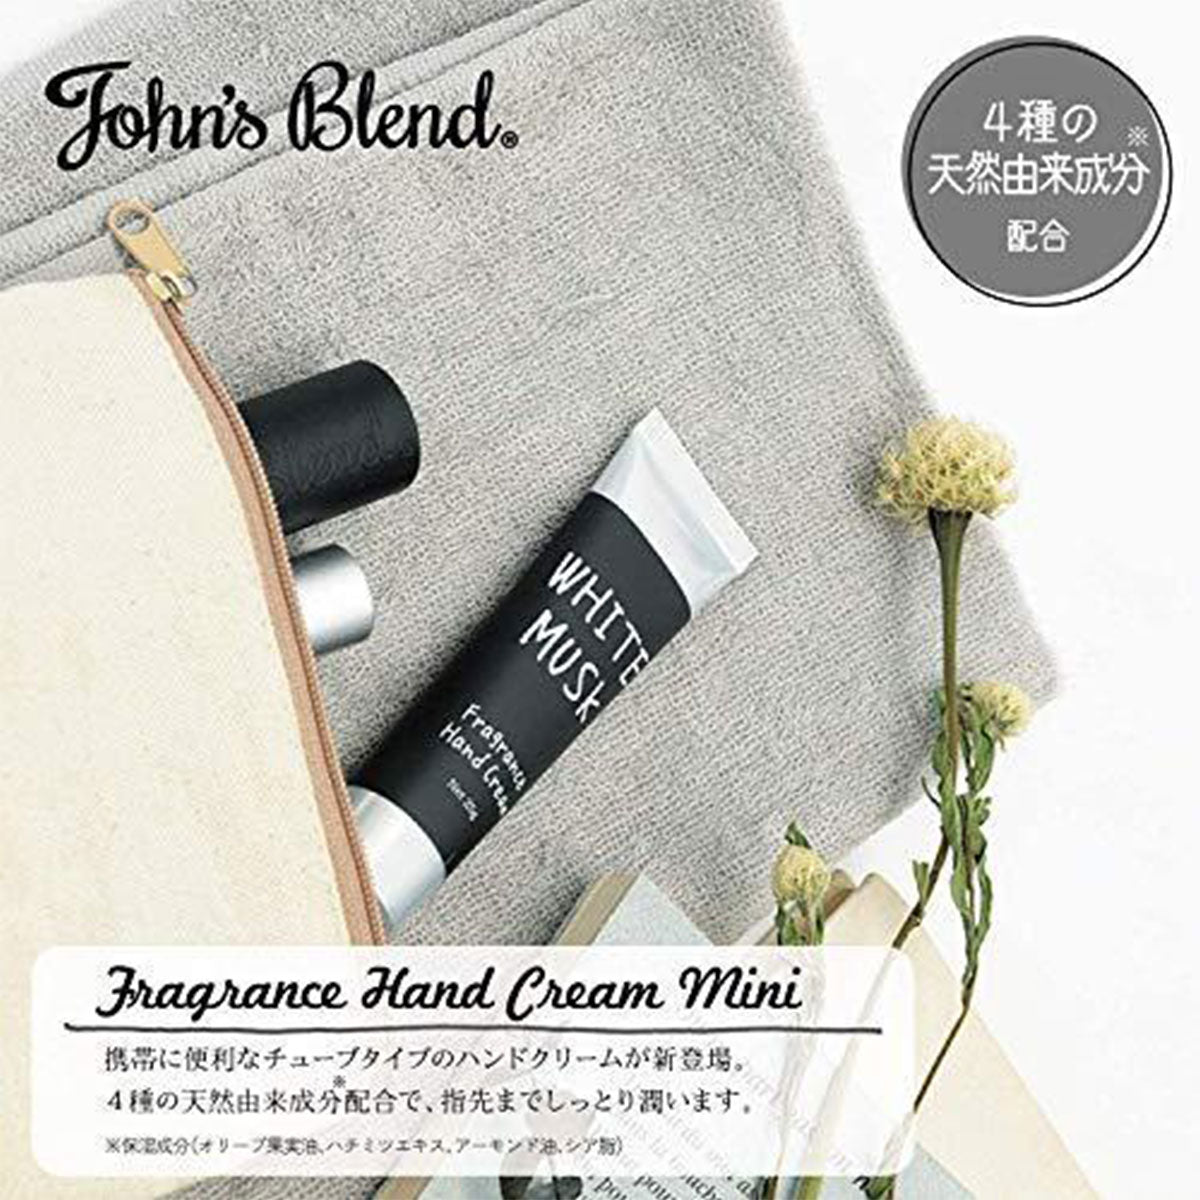 日本John's Blend迷你护手霜#铃兰香 25g